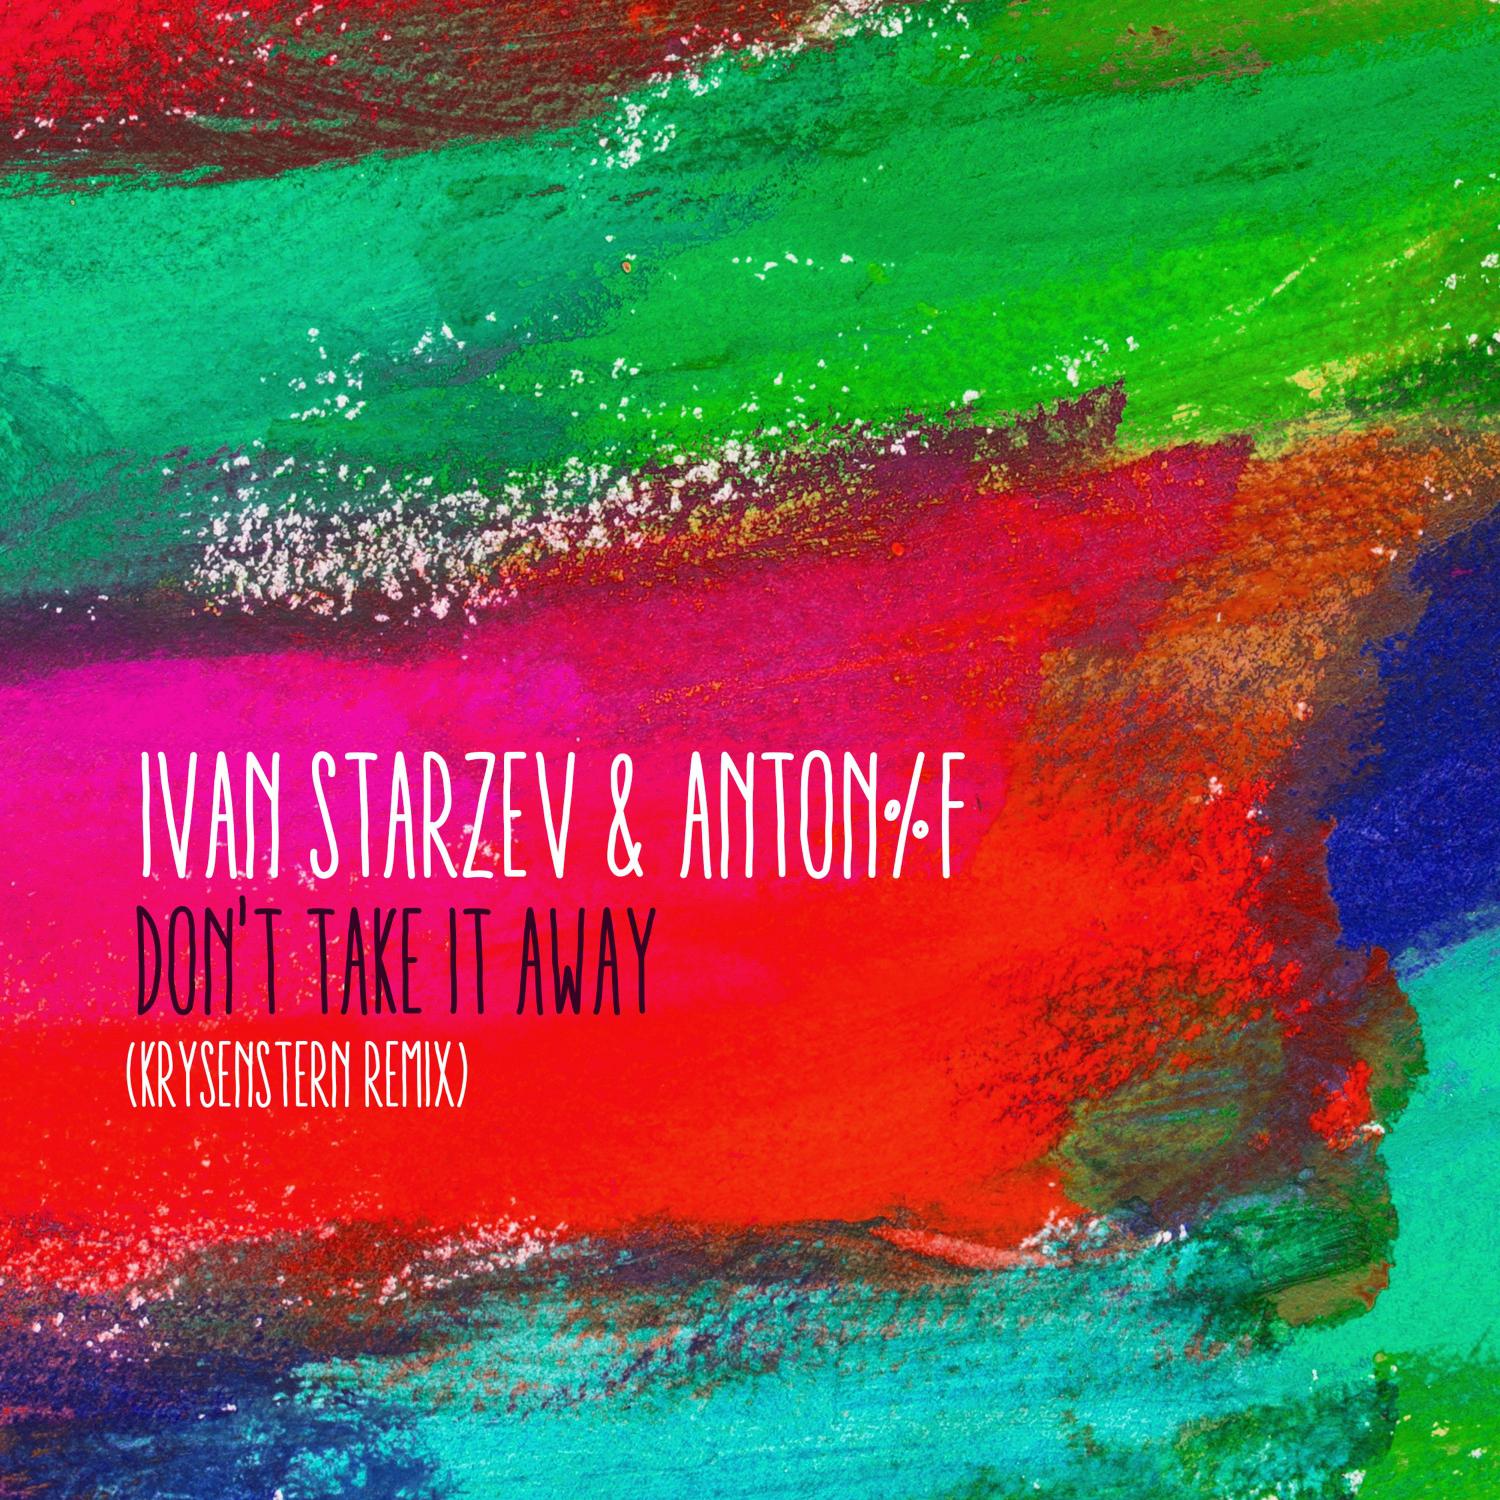 Ivan Starzev - Don't Take It Away (Krysenstern Remix)